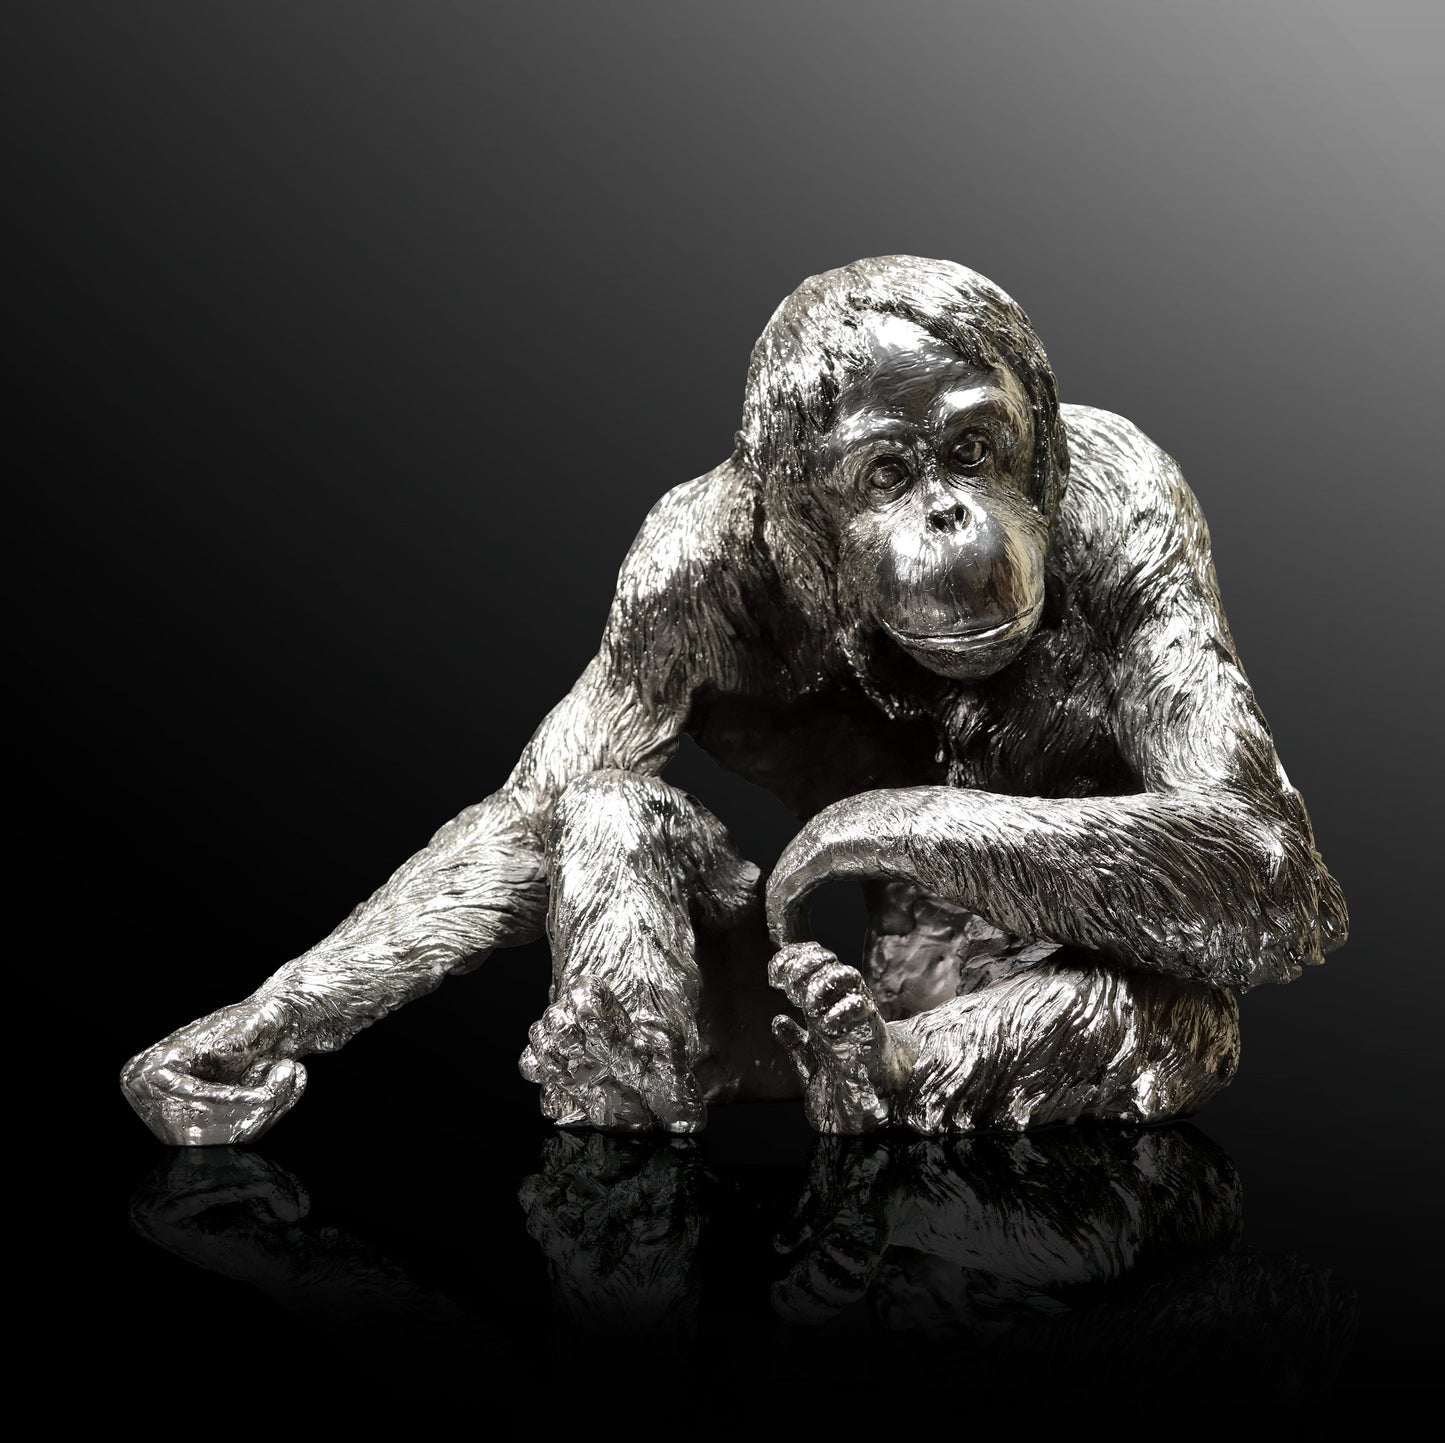 Orangutan Nickel Sculpture by Keith Sherwin for Richard Cooper Studio